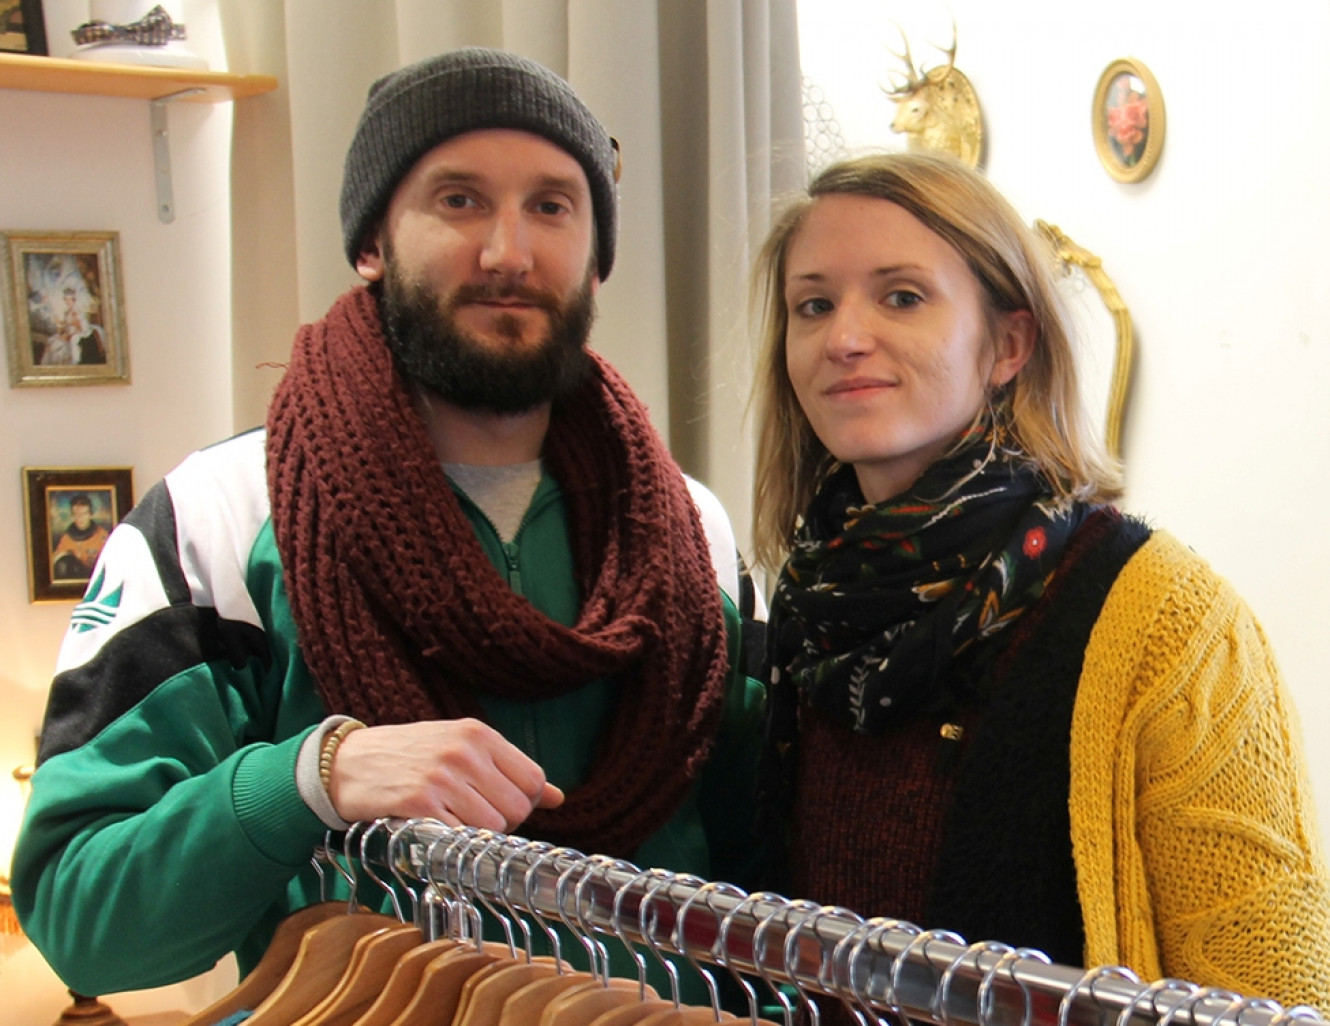 Frère et sœur, Adrien et Laura Béan viennent de prendre possession du Commerce à l’Essai de la Grande rue à Nancy pour installer leur Freap Show.